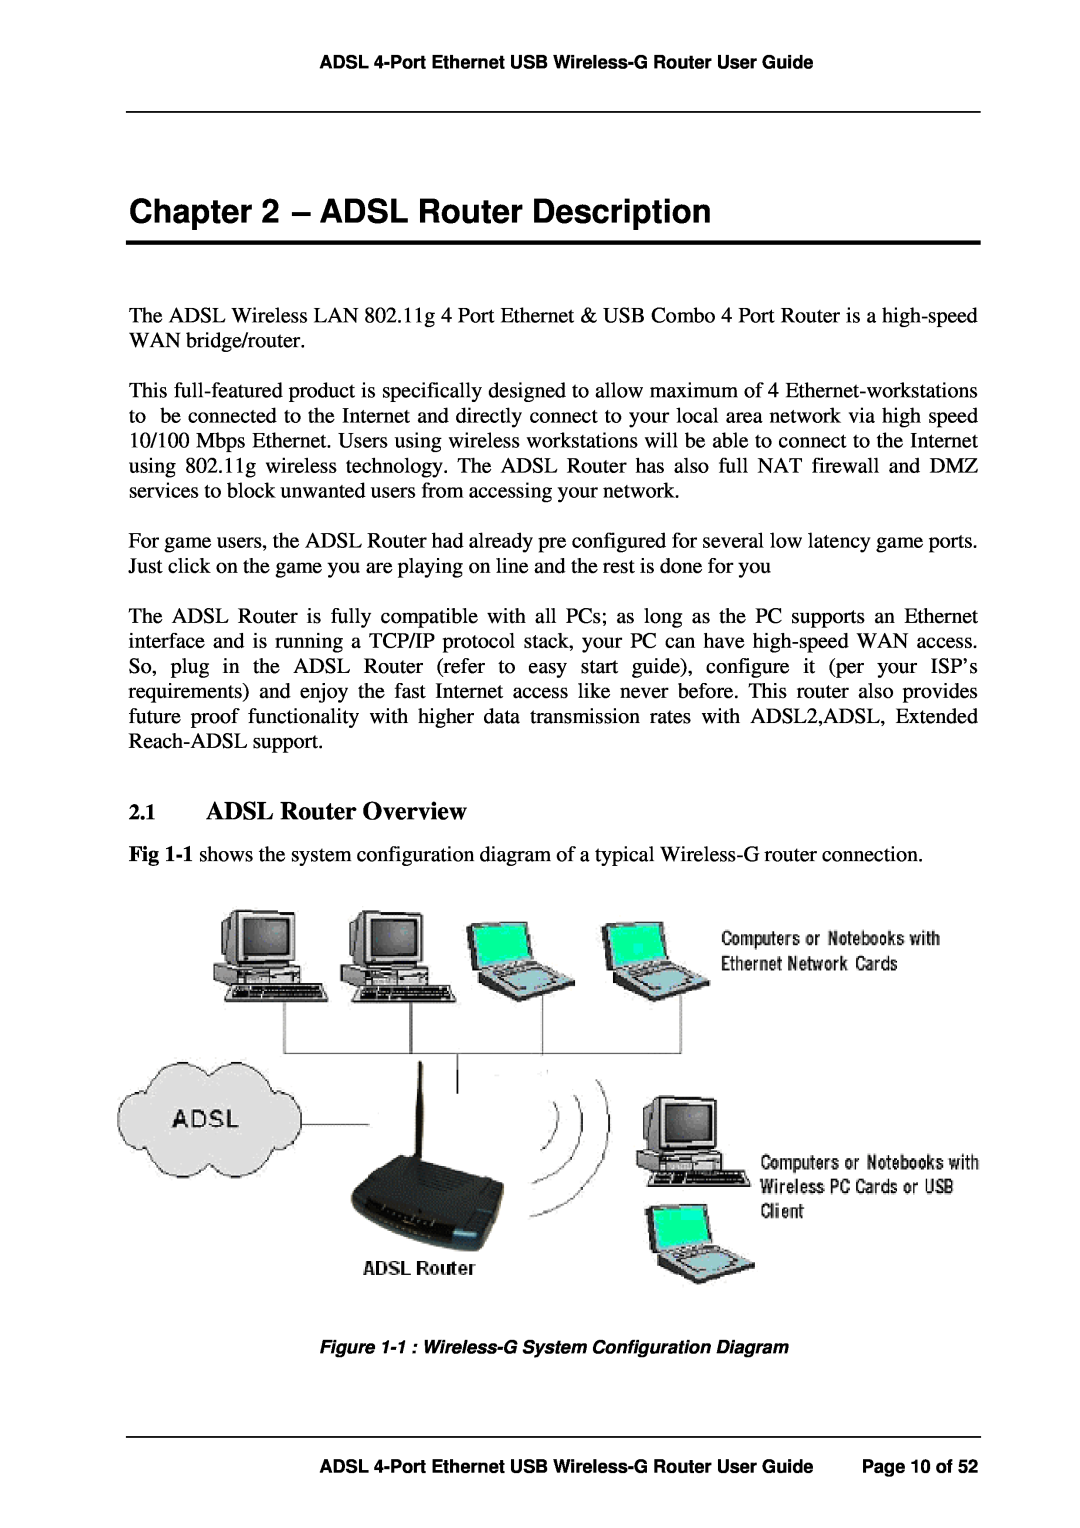 APC ADSL 4-Port manual ADSL Router Description, ADSL Router Overview 